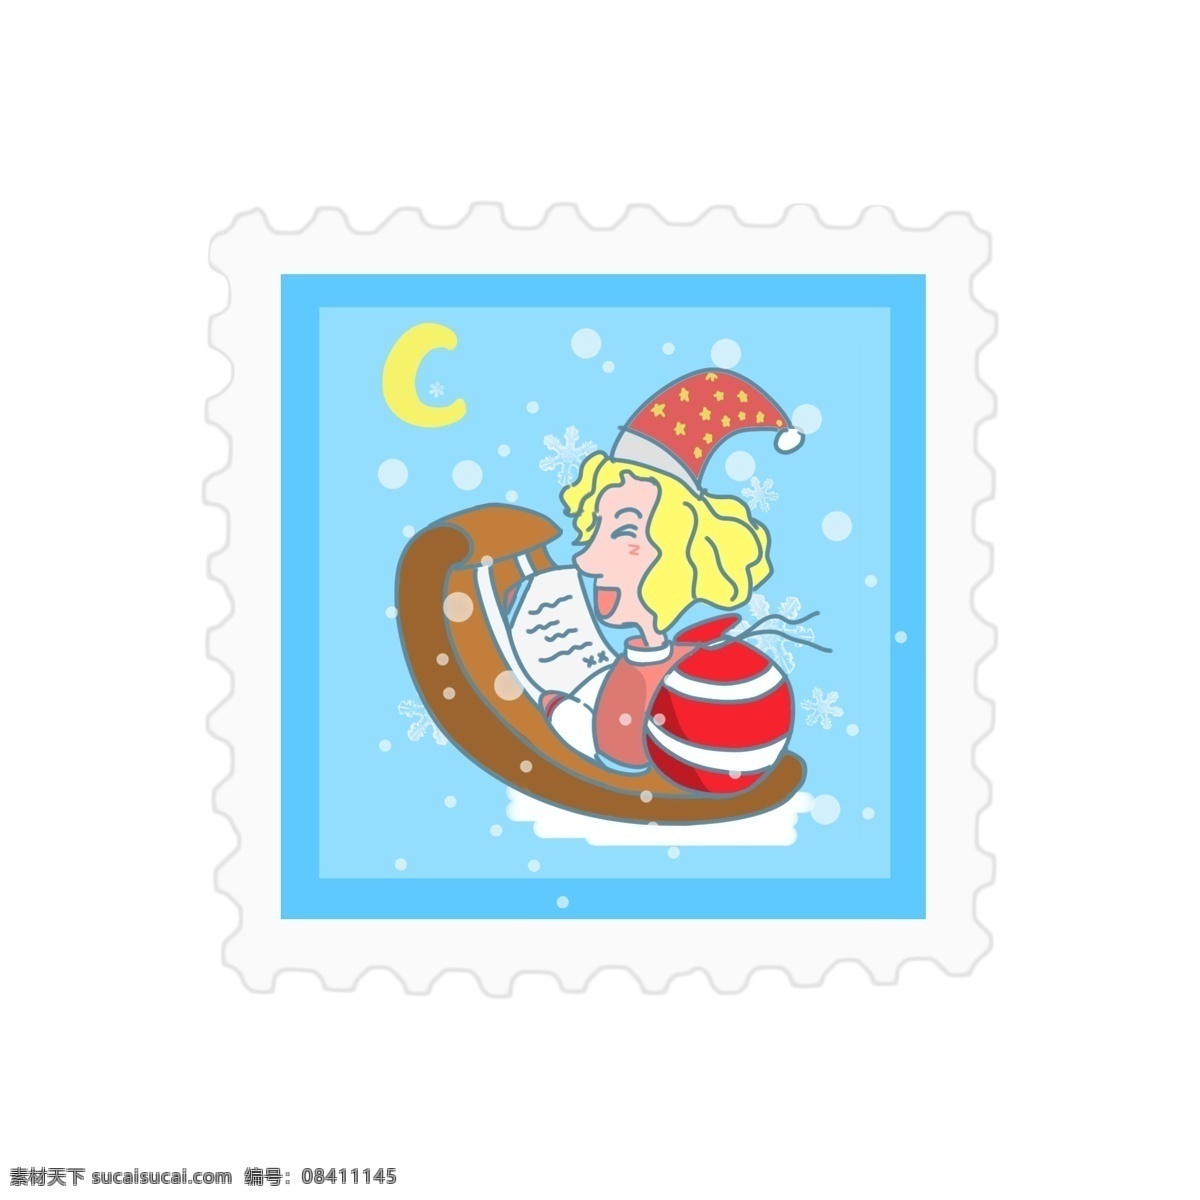 原创 圣诞 邮票 贴纸 蓝色 可爱 元素 圣诞节 礼物 节日 创意 圣诞老人 下雪